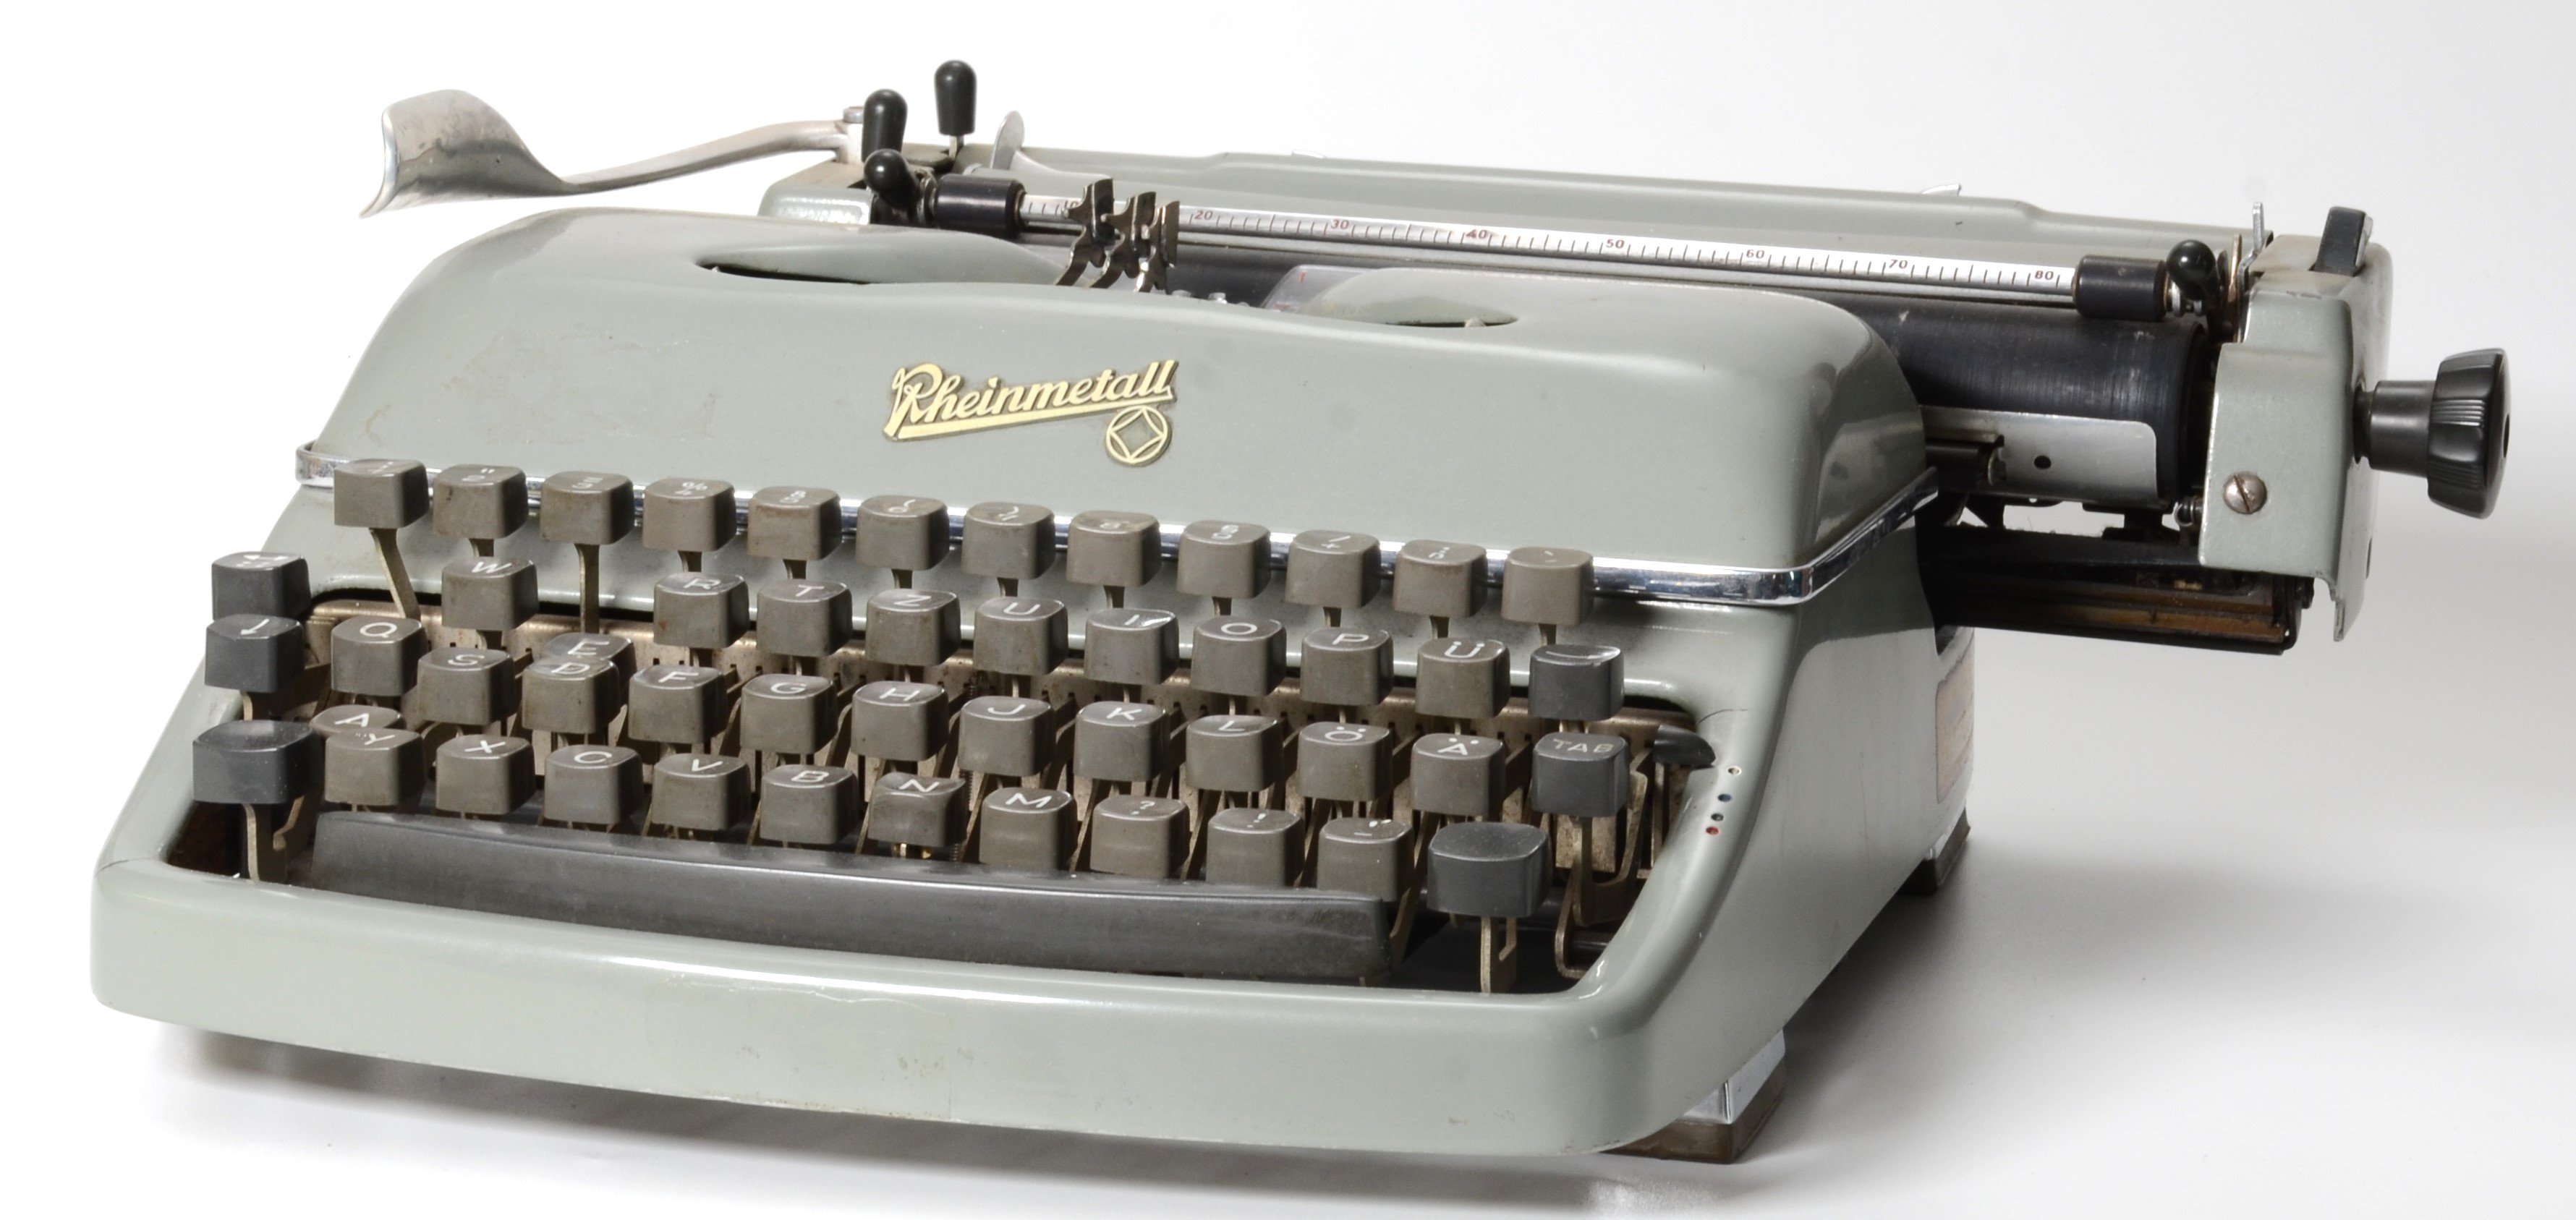 Schreibmaschine der Firma Rheinmetall (DDR Geschichtsmuseum im Dokumentationszentrum Perleberg CC BY-SA)